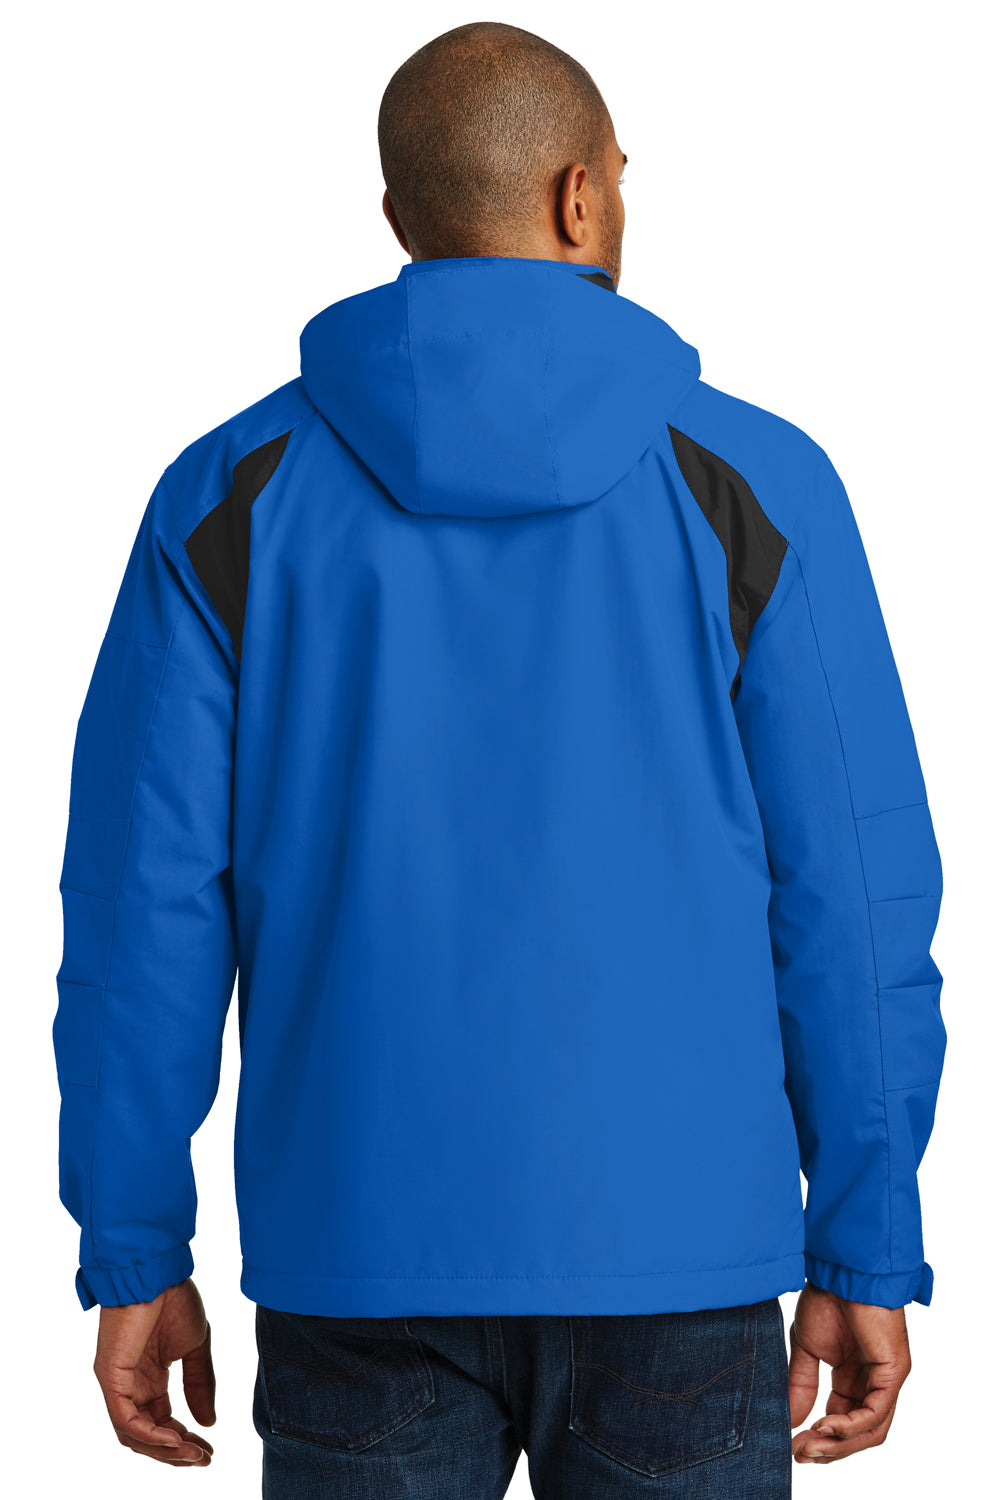 Port Authority J304 Mens All Season II Waterproof Full Zip Hooded Jacket Snorkel Blue/Black Back